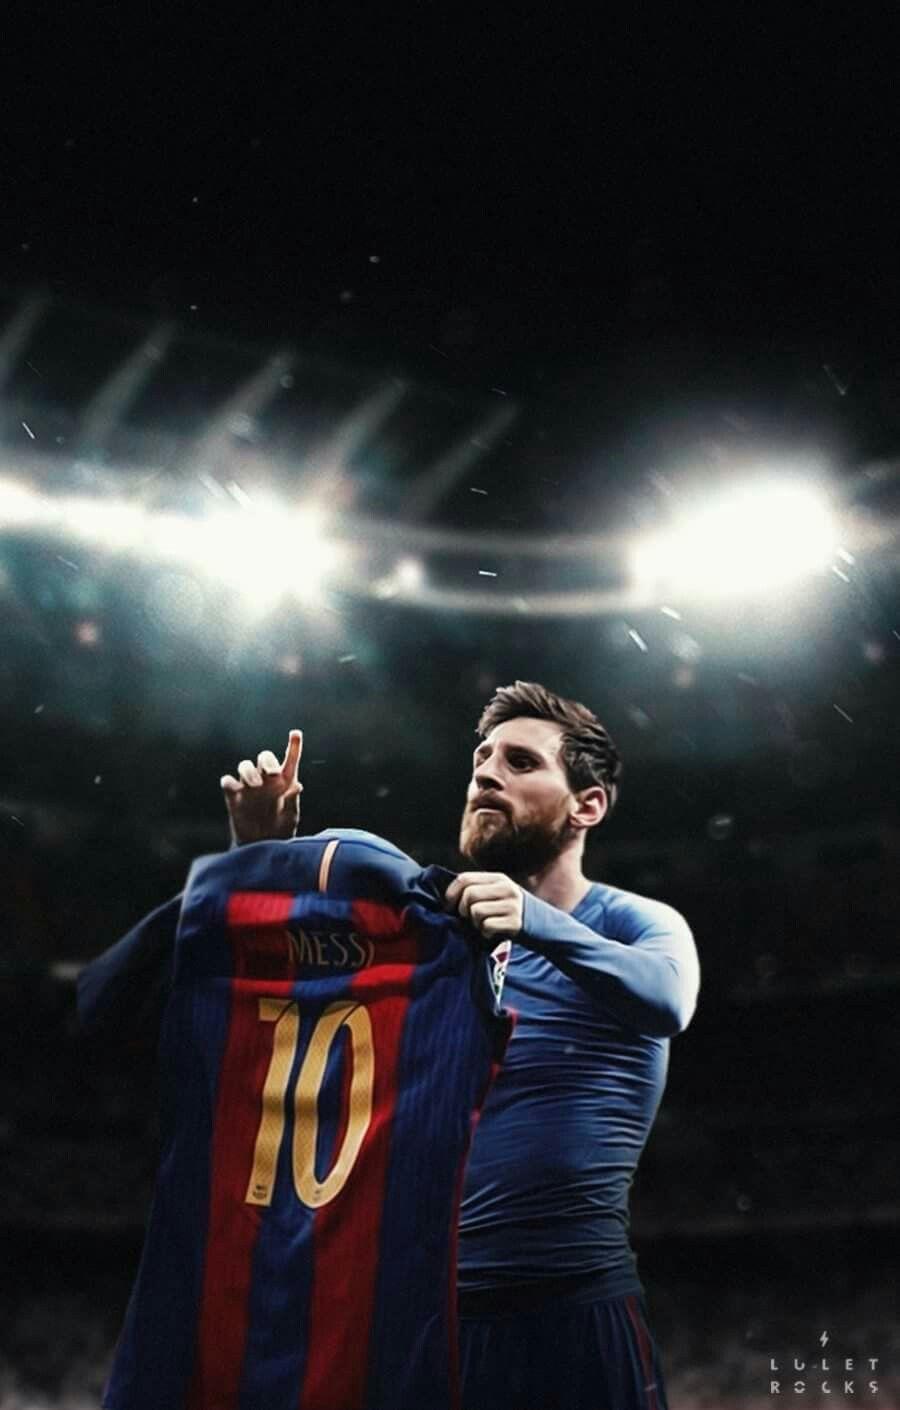 Hình nền kỷ niệm của Messi Kỷ niệm những khoảnh khắc đẹp của Messi thông qua hình nền tuyệt đẹp. Hãy trang trí cho điện thoại hoặc máy tính của bạn với những hình nền ấn tượng của một trong những cầu thủ vĩ đại nhất thế giới bóng đá. Nhấn vào xem ngay!